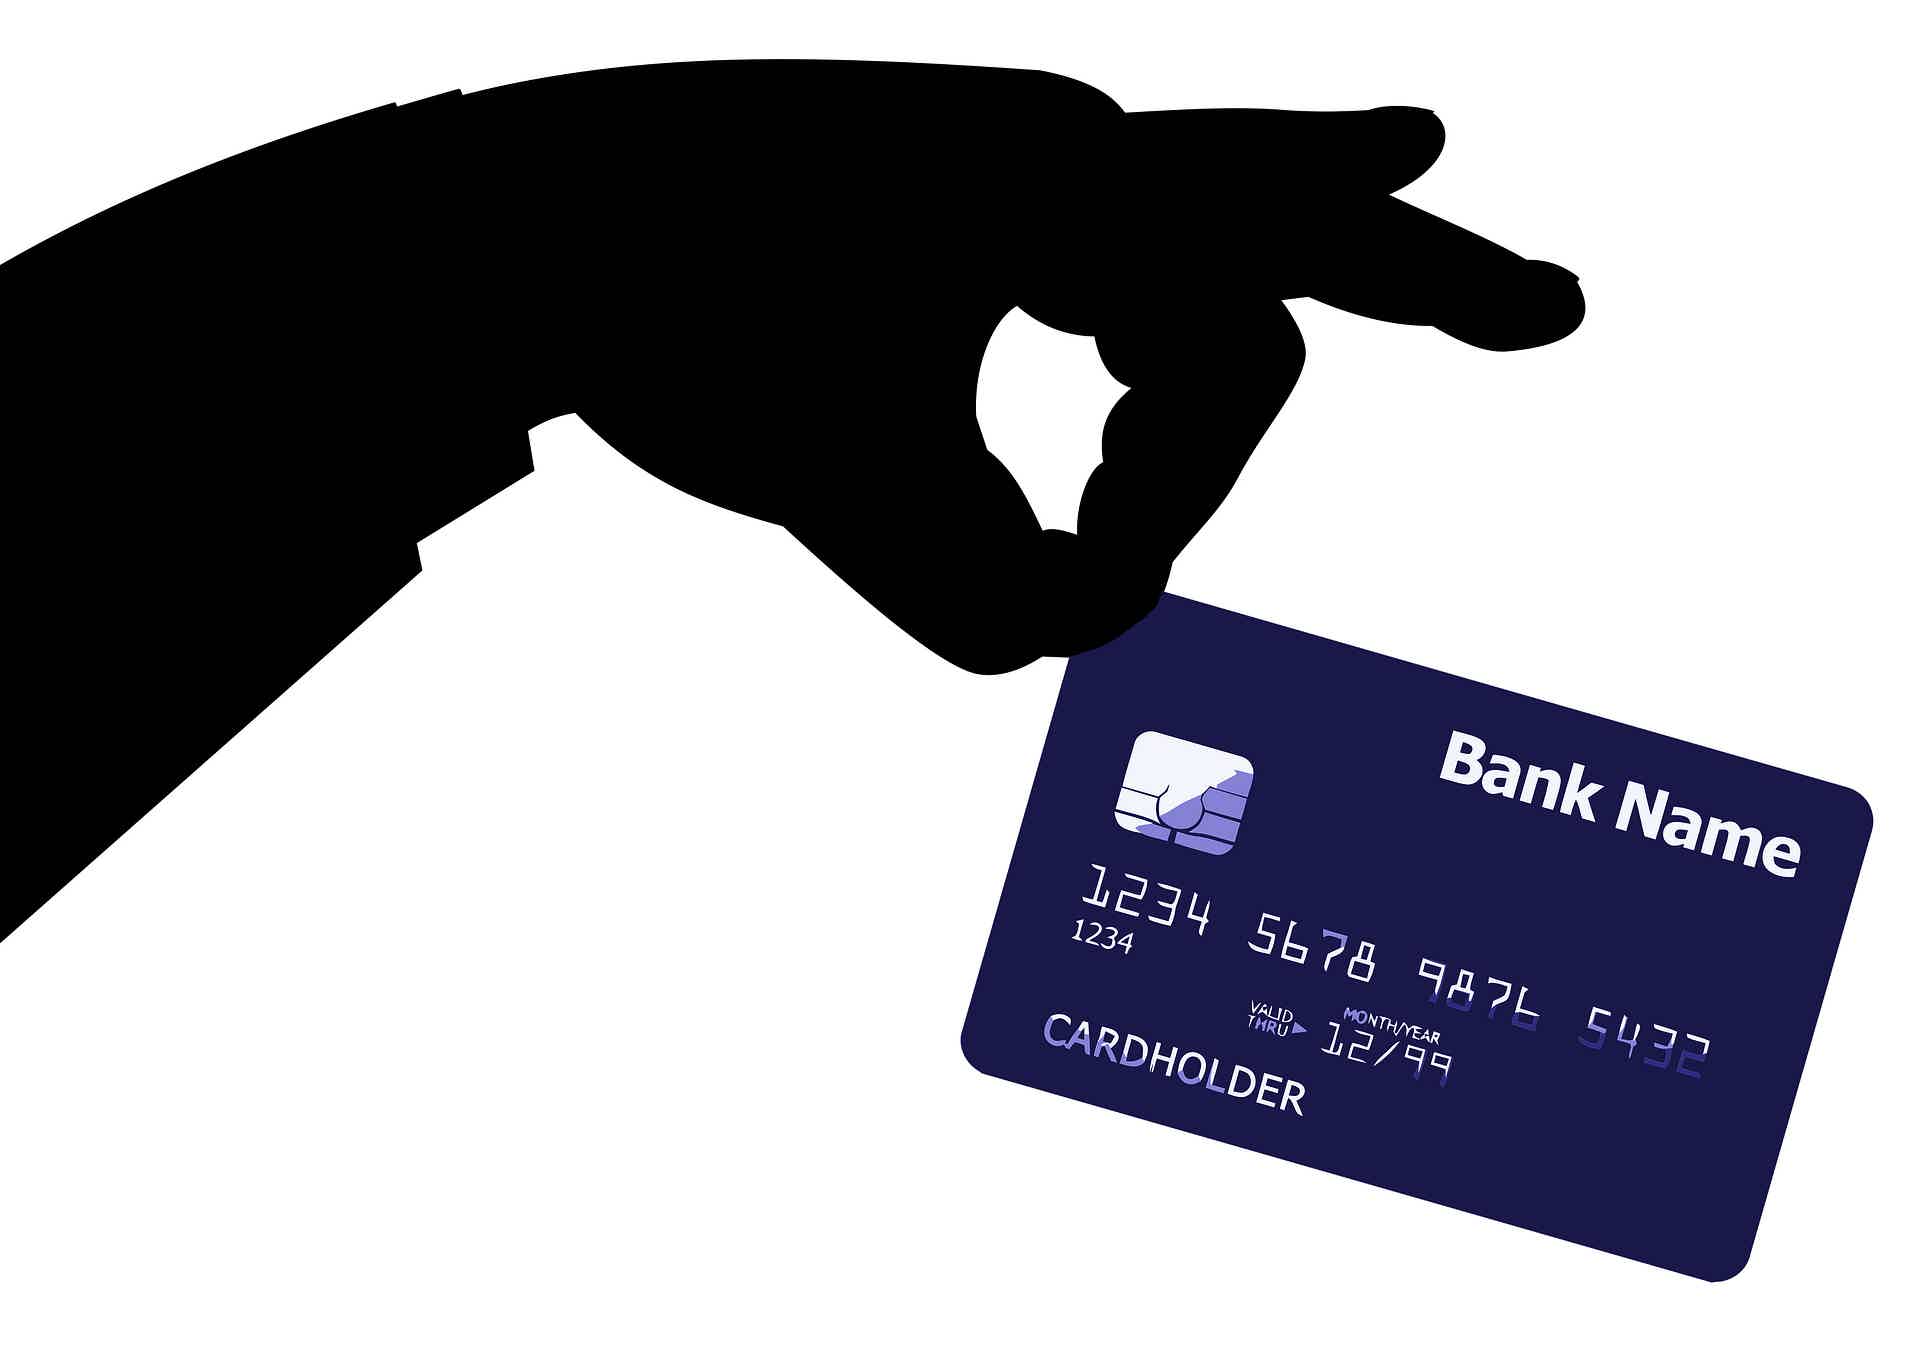 O cartão de crédito é pessoal e intransferível, por isso, não o empreste. Foto: Pixabay / Tumisu